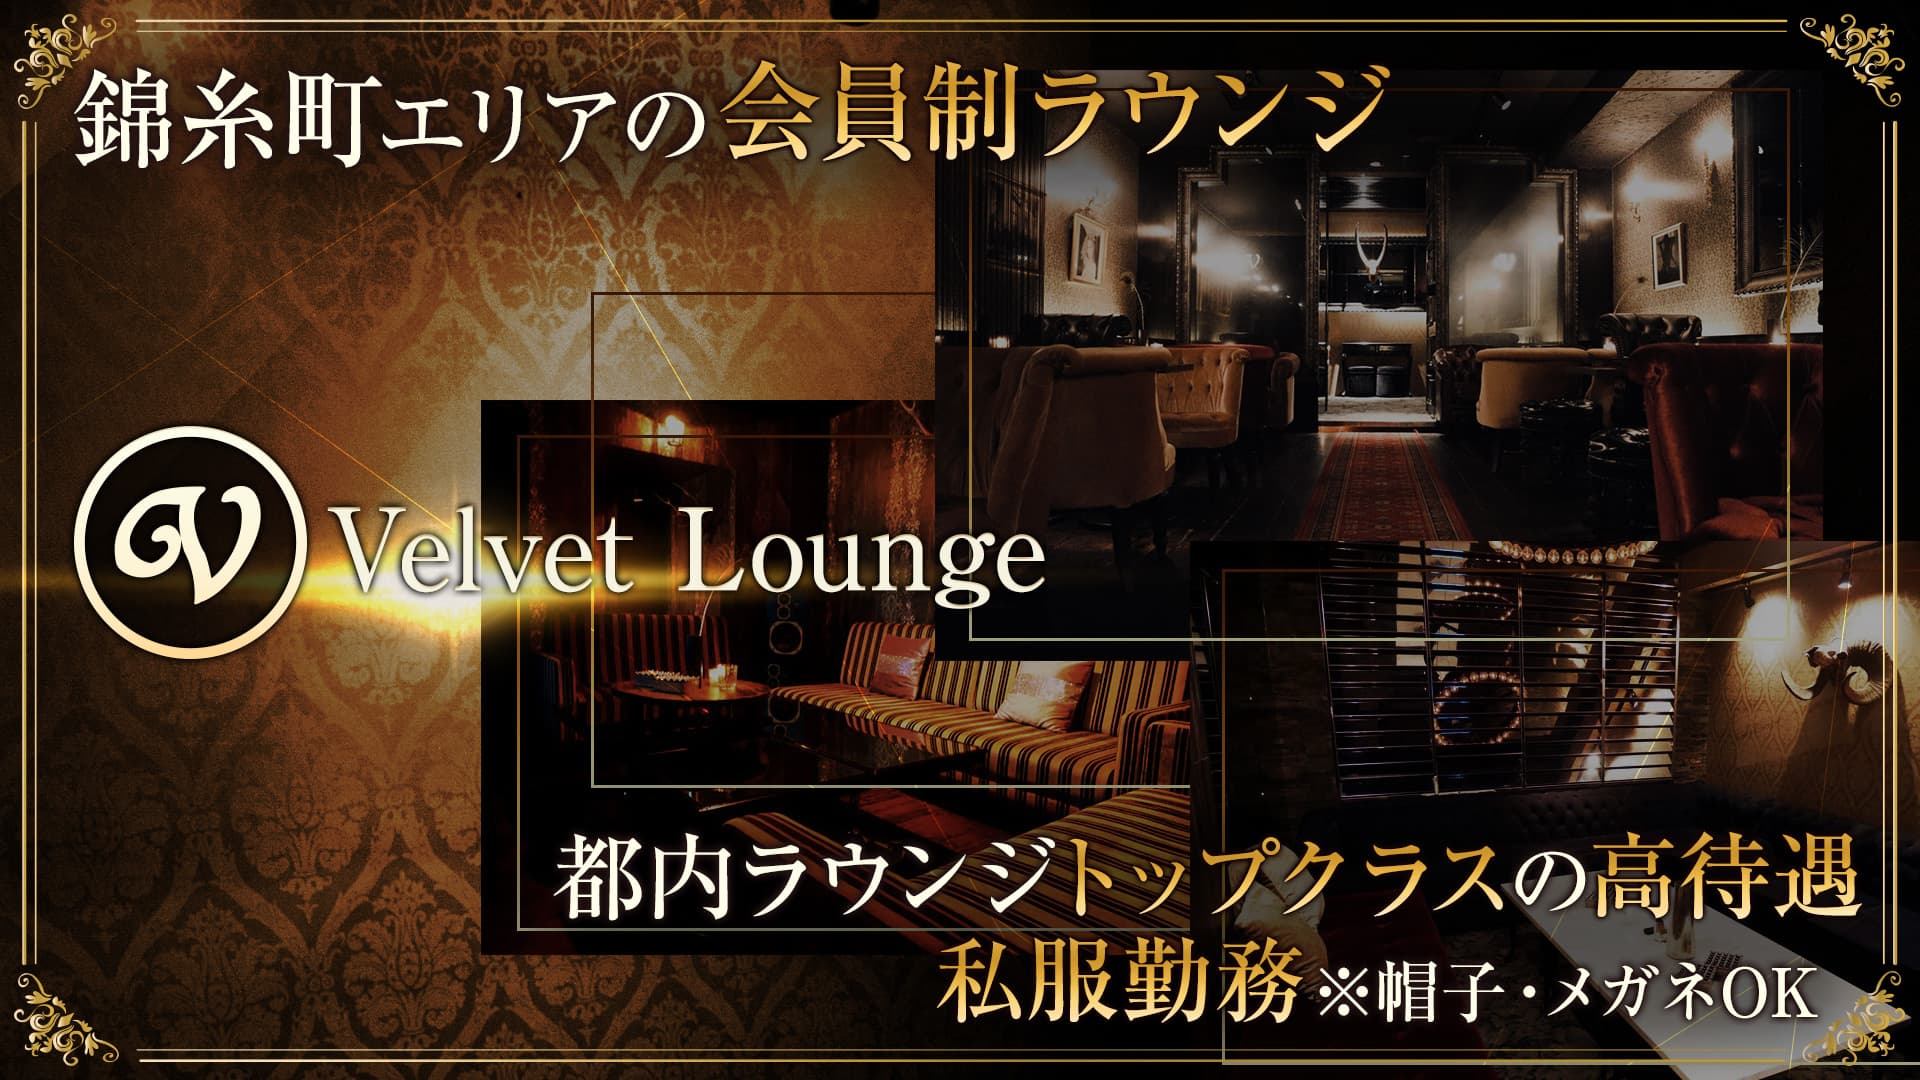 Velvet Lounge (ベルベットラウンジ)【公式求人・体入情報】 錦糸町ラウンジ TOP画像